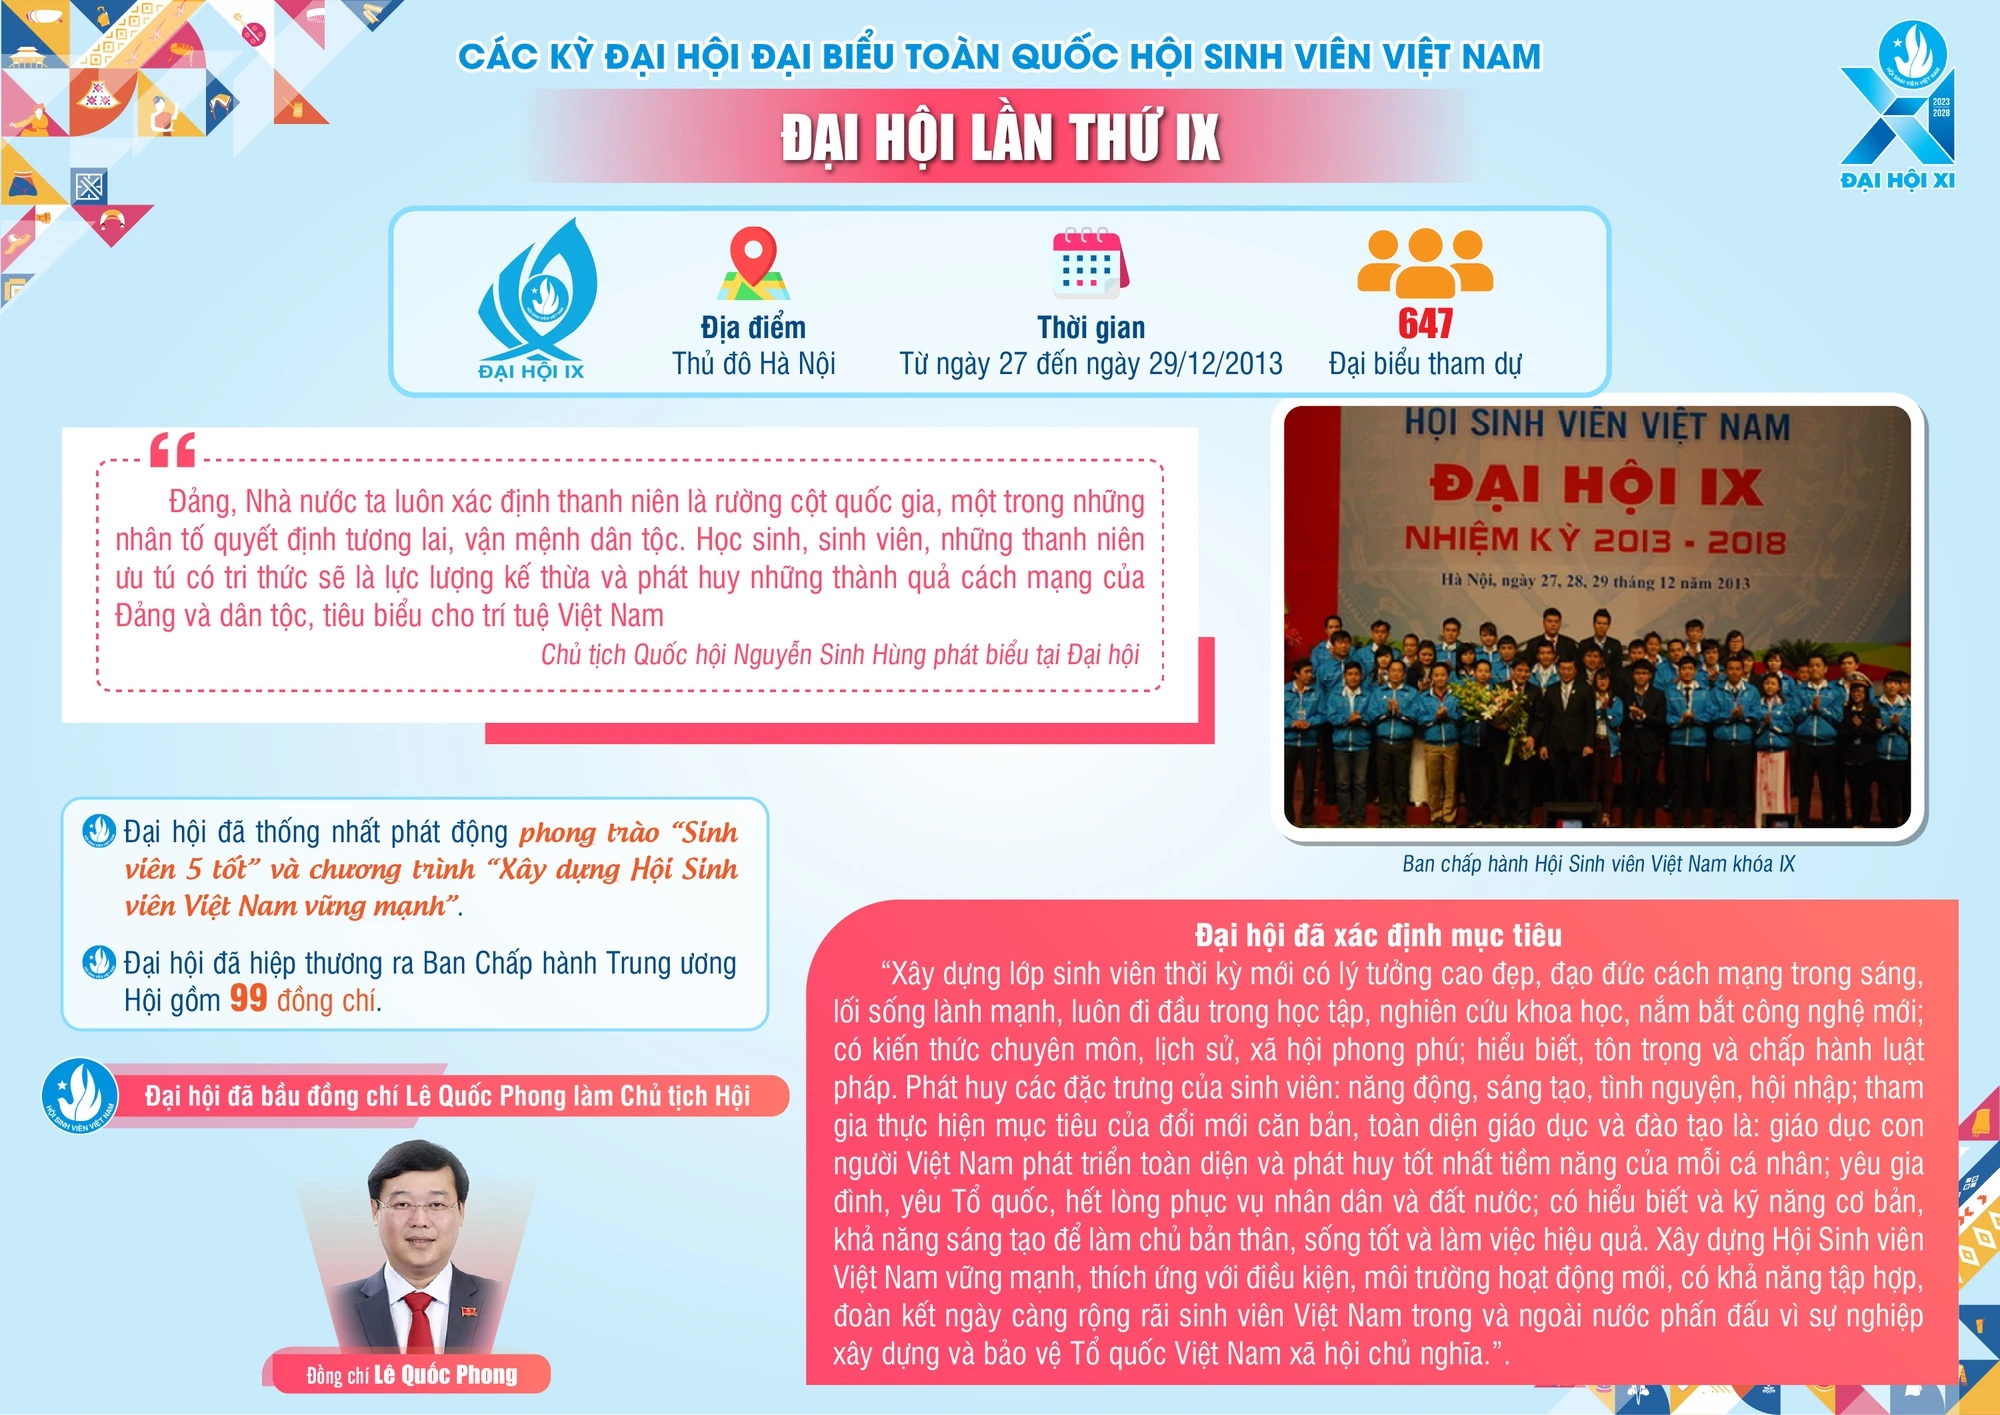 10 kỳ Đại hội đại biểu Hội Sinh viên Việt Nam - Ảnh 9.